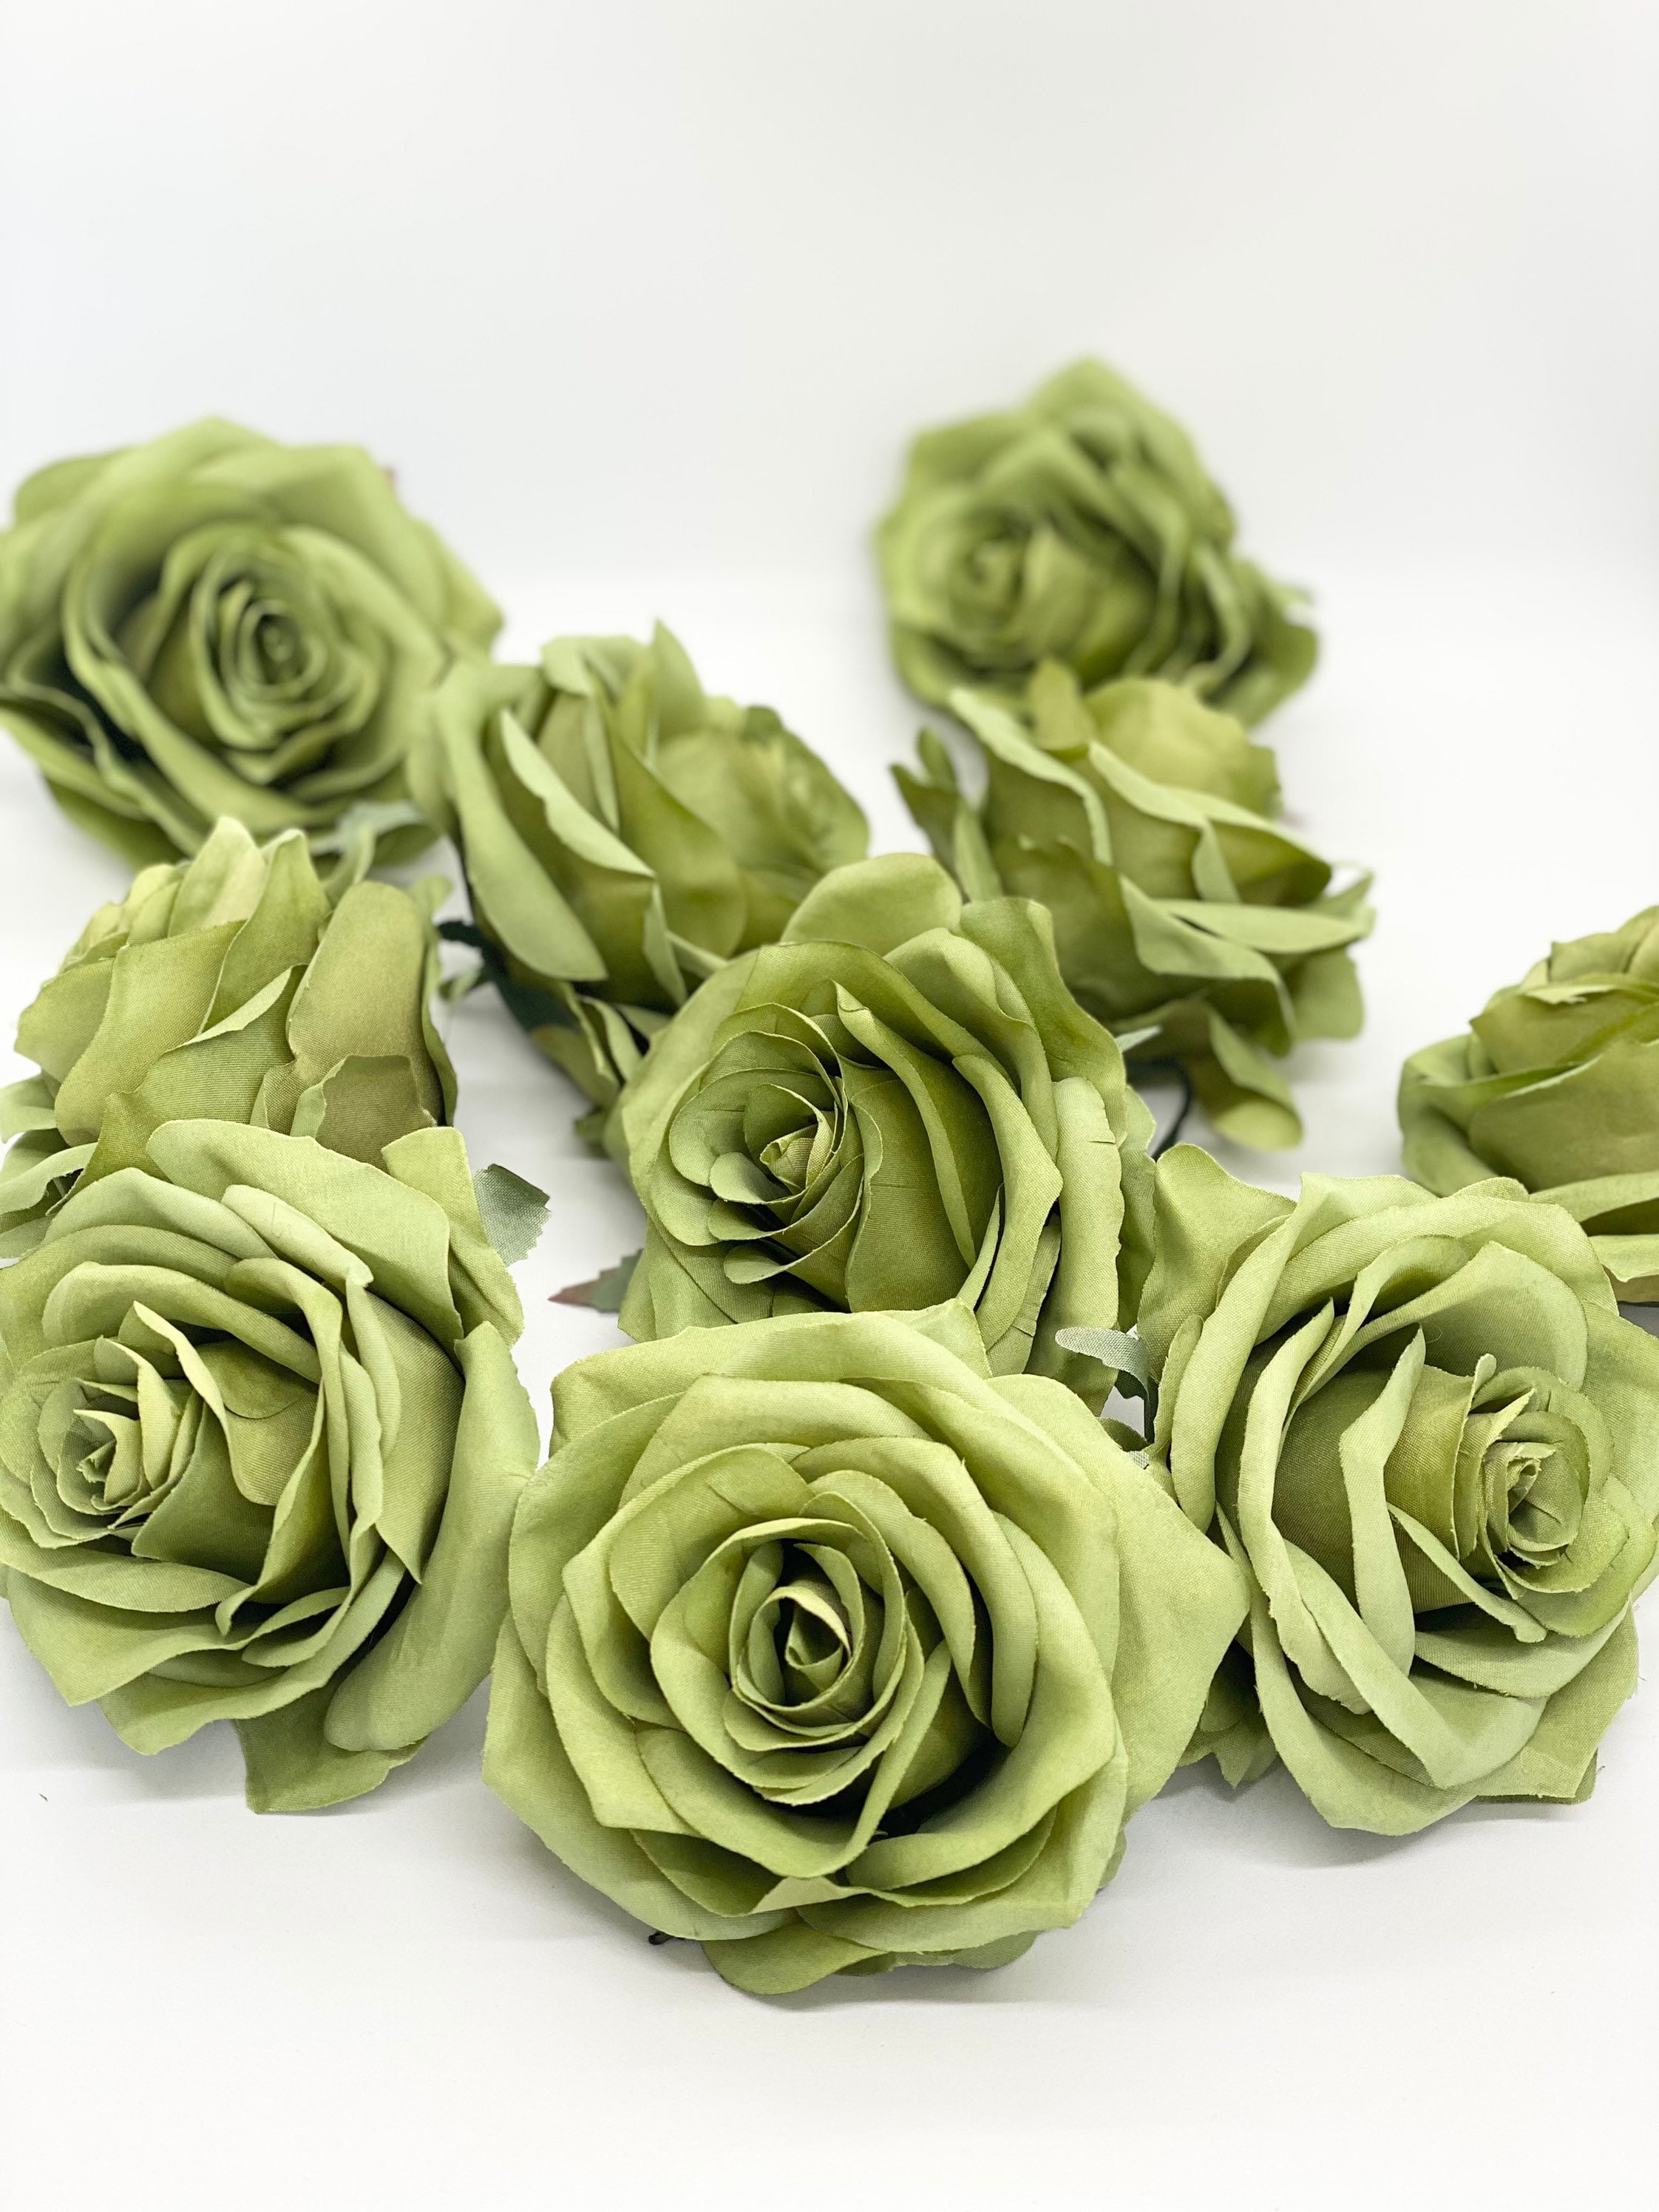 Gran Lote De Seda Artificial Flor Rosa 3.5" cabeza para boda hogar decoración al por mayor 